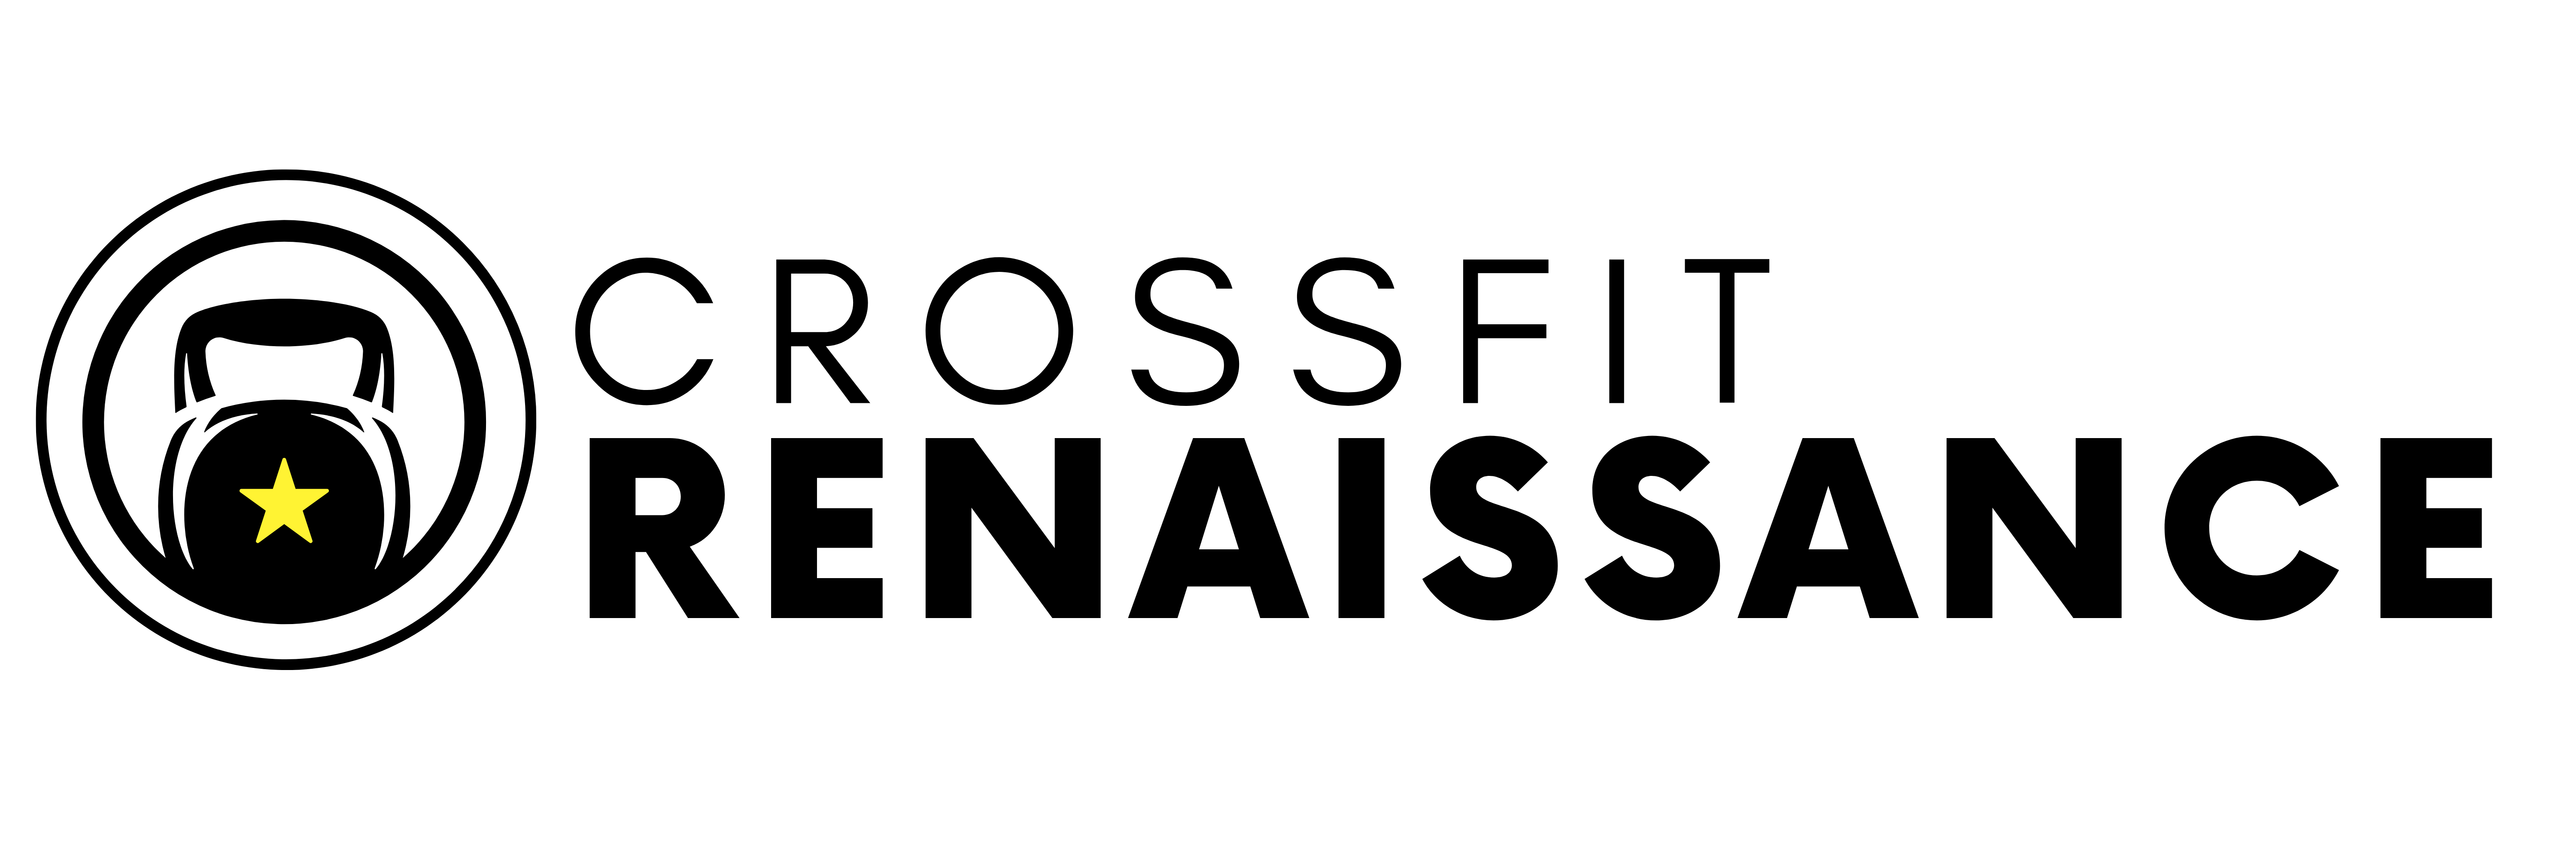 CrossFit Renaissance logo